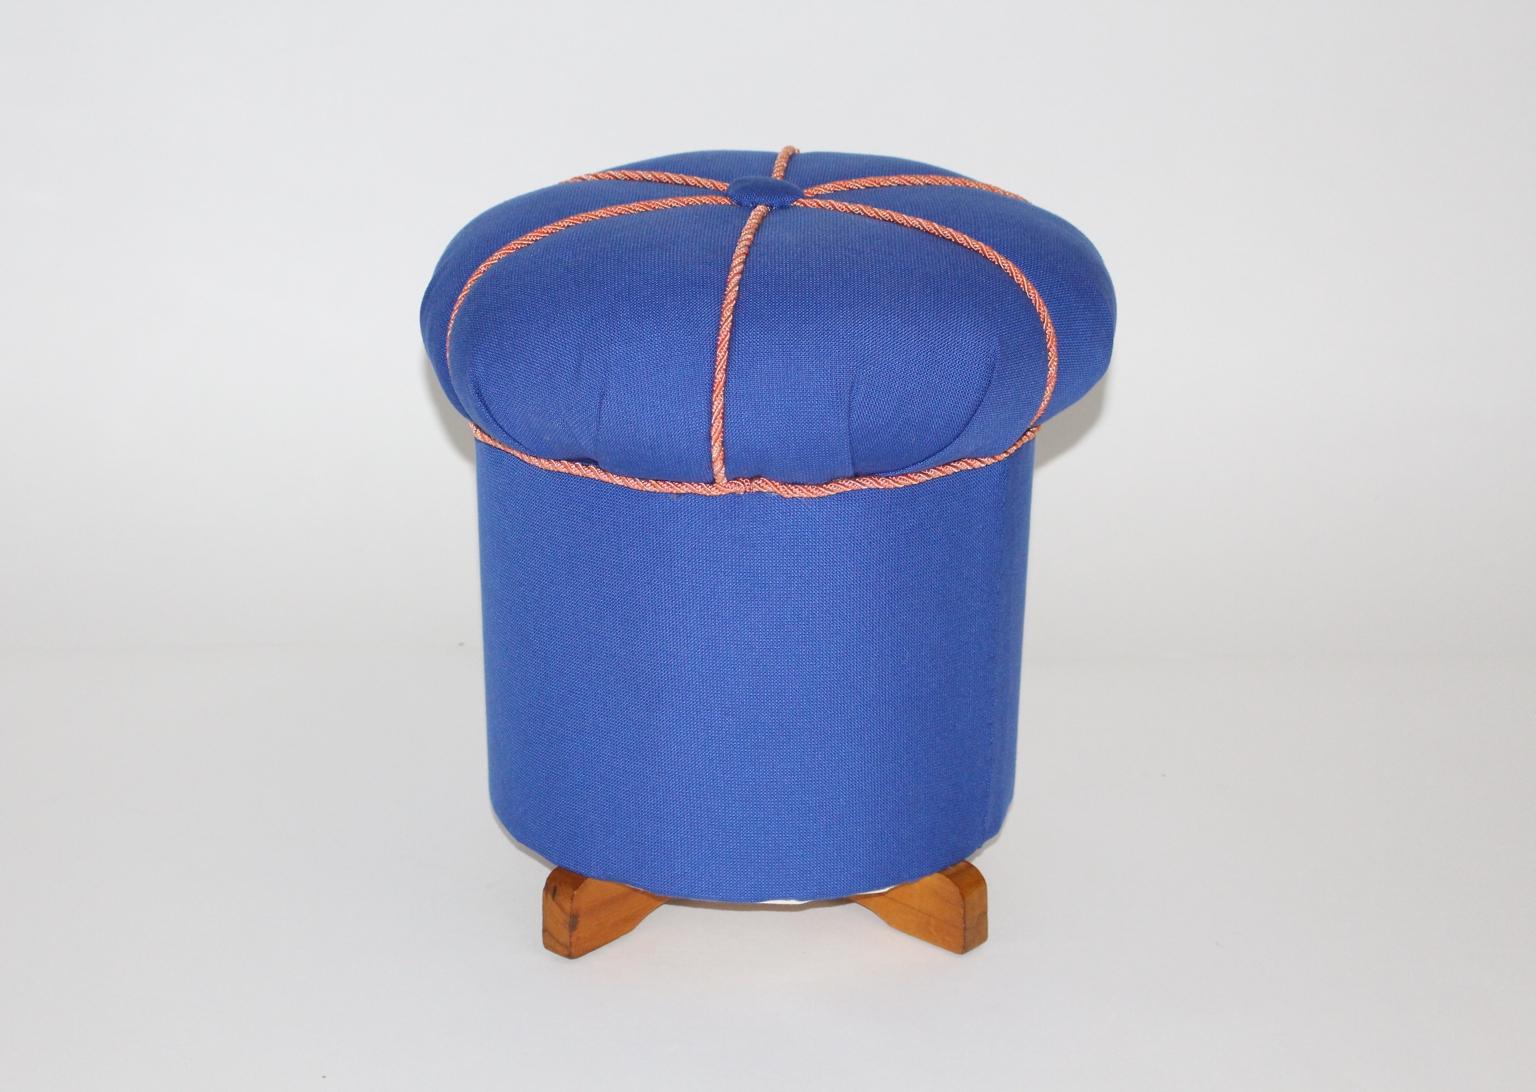 Le pouf vintage présenté a des pieds en bois de hêtre et a été récemment recouvert d'un tissu bleu électrique et de cordons roses.
Ce pouf a été conçu et fabriqué en Autriche, vers 1930.
L'état vintage est également très bon.
Mesures